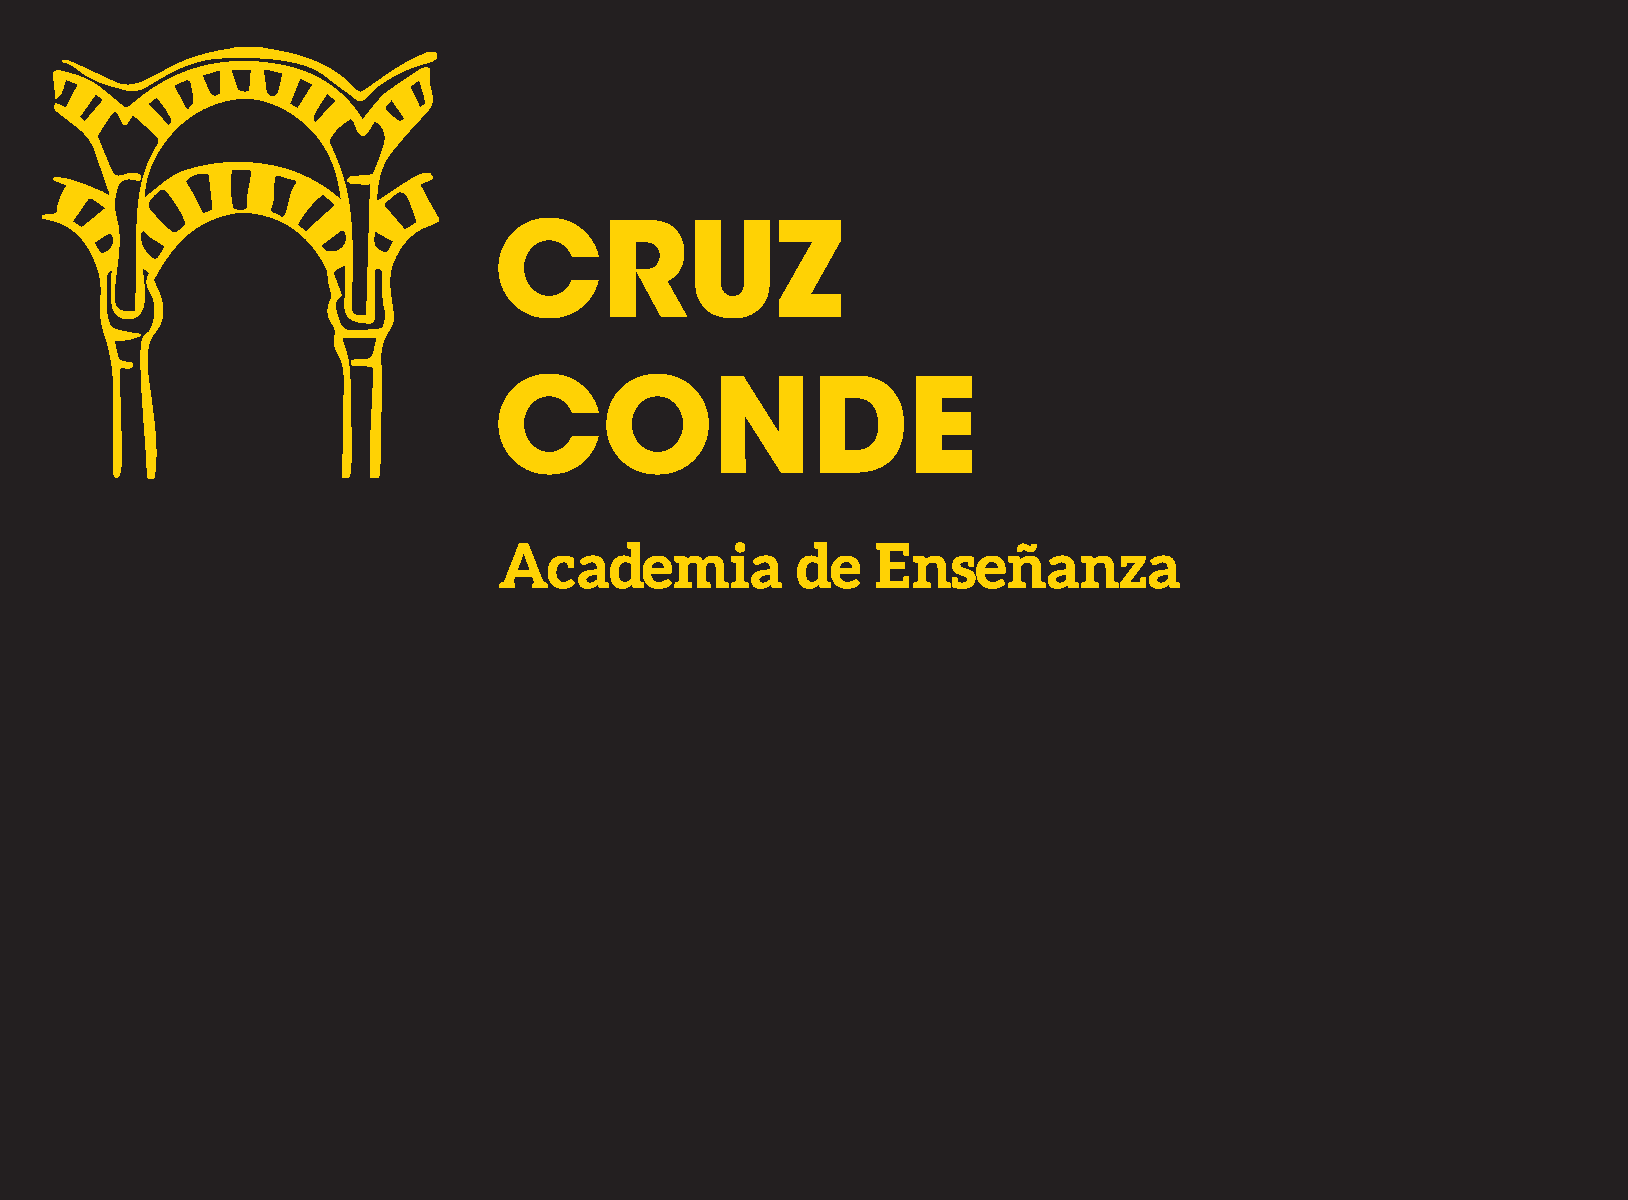 Academia Cruz Conde